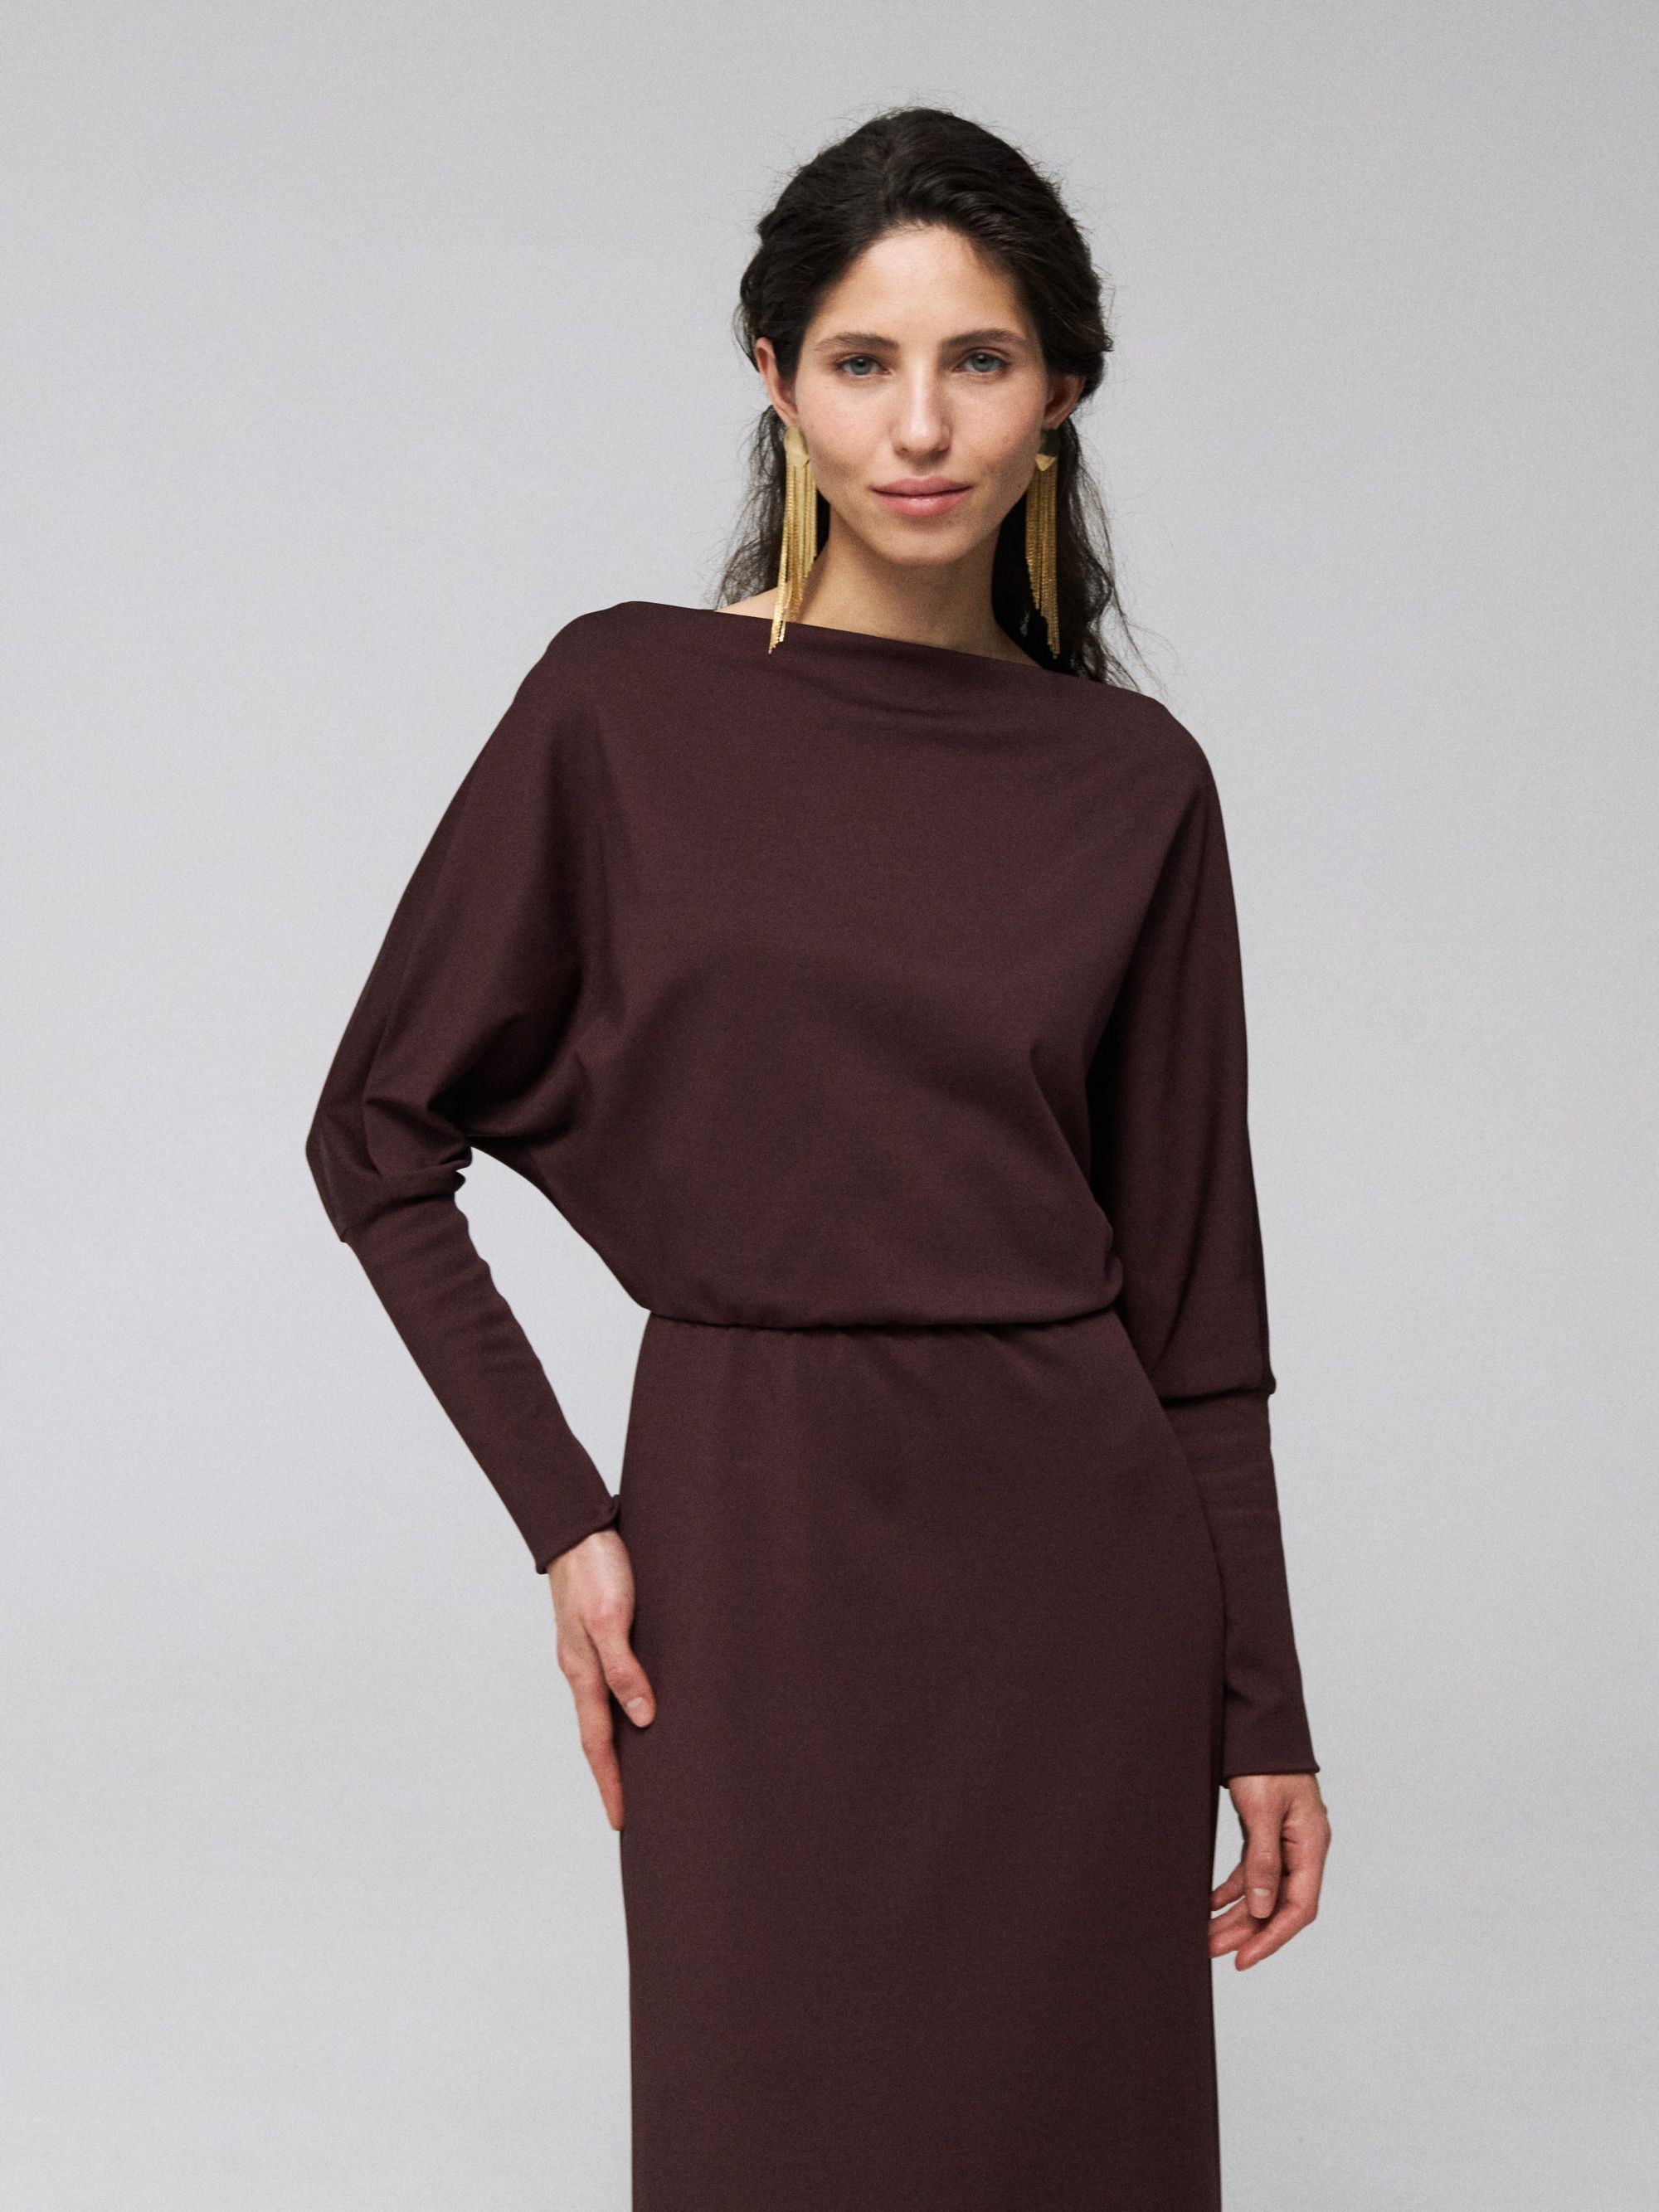 Dress, pattern №1085 buy online